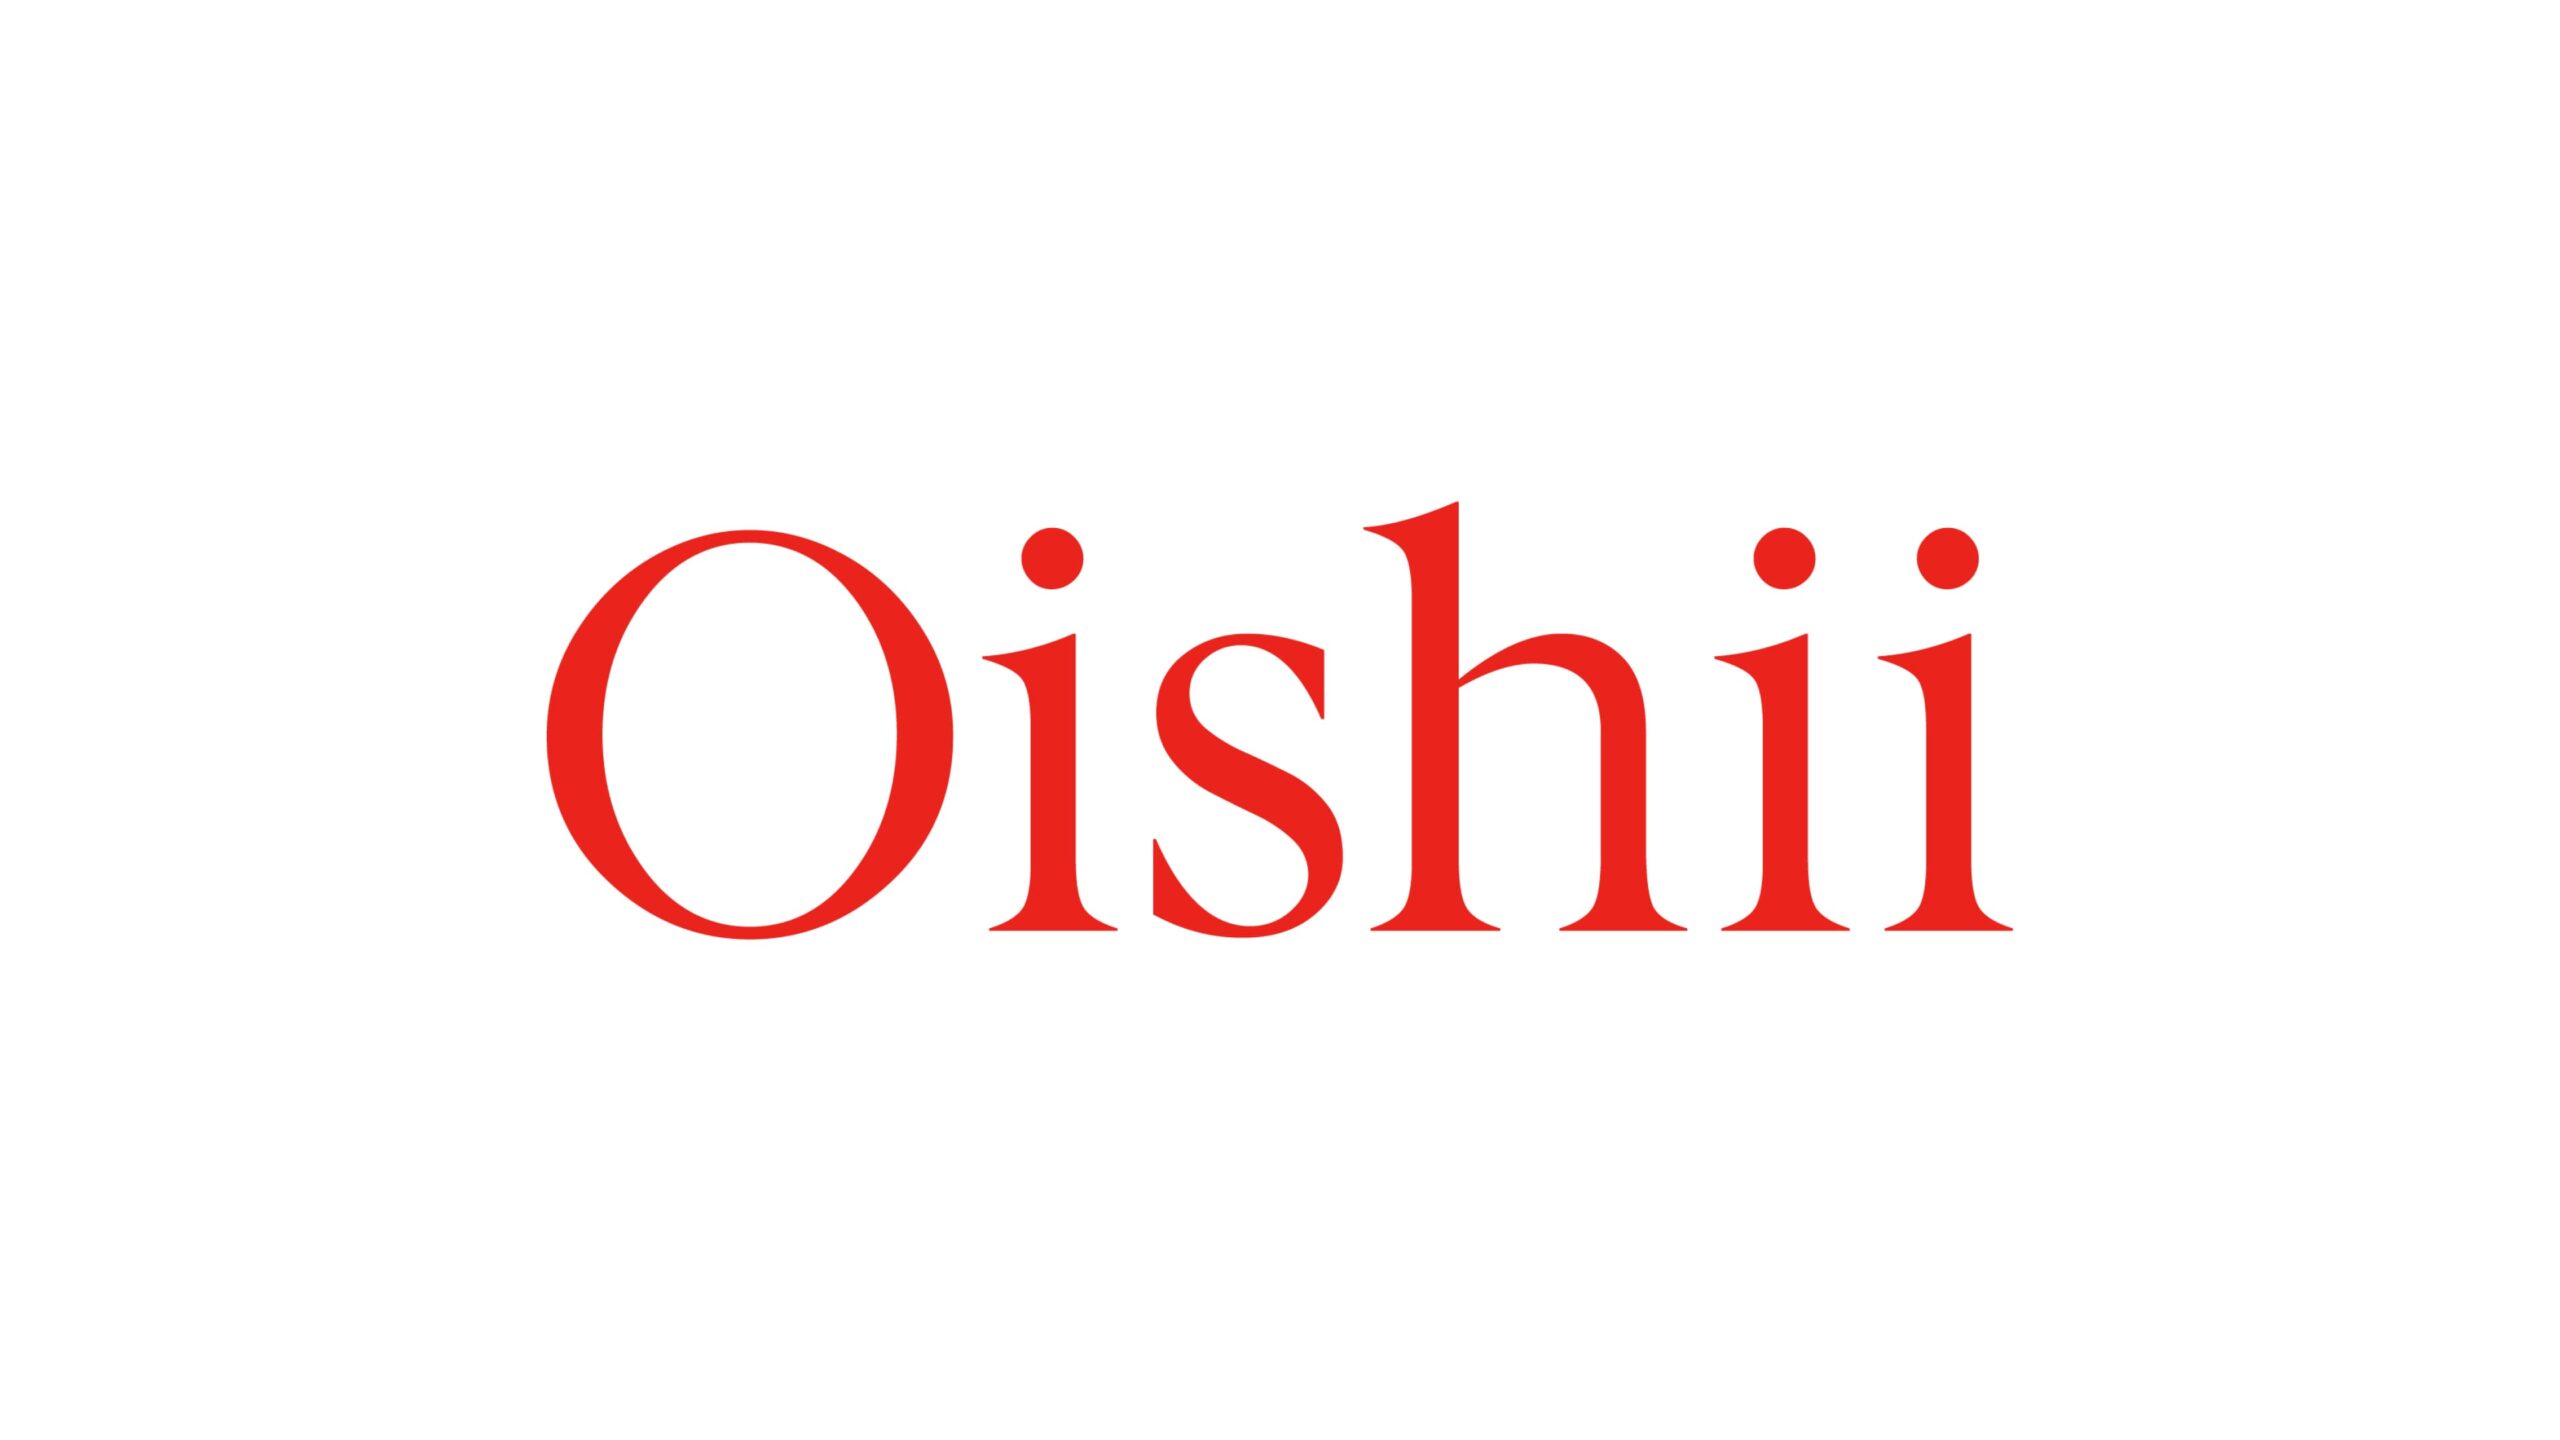 サステナブルな農業実現を目指して植物工場を展開するOishii Farm Corporationが約200億円の資金調達を実施